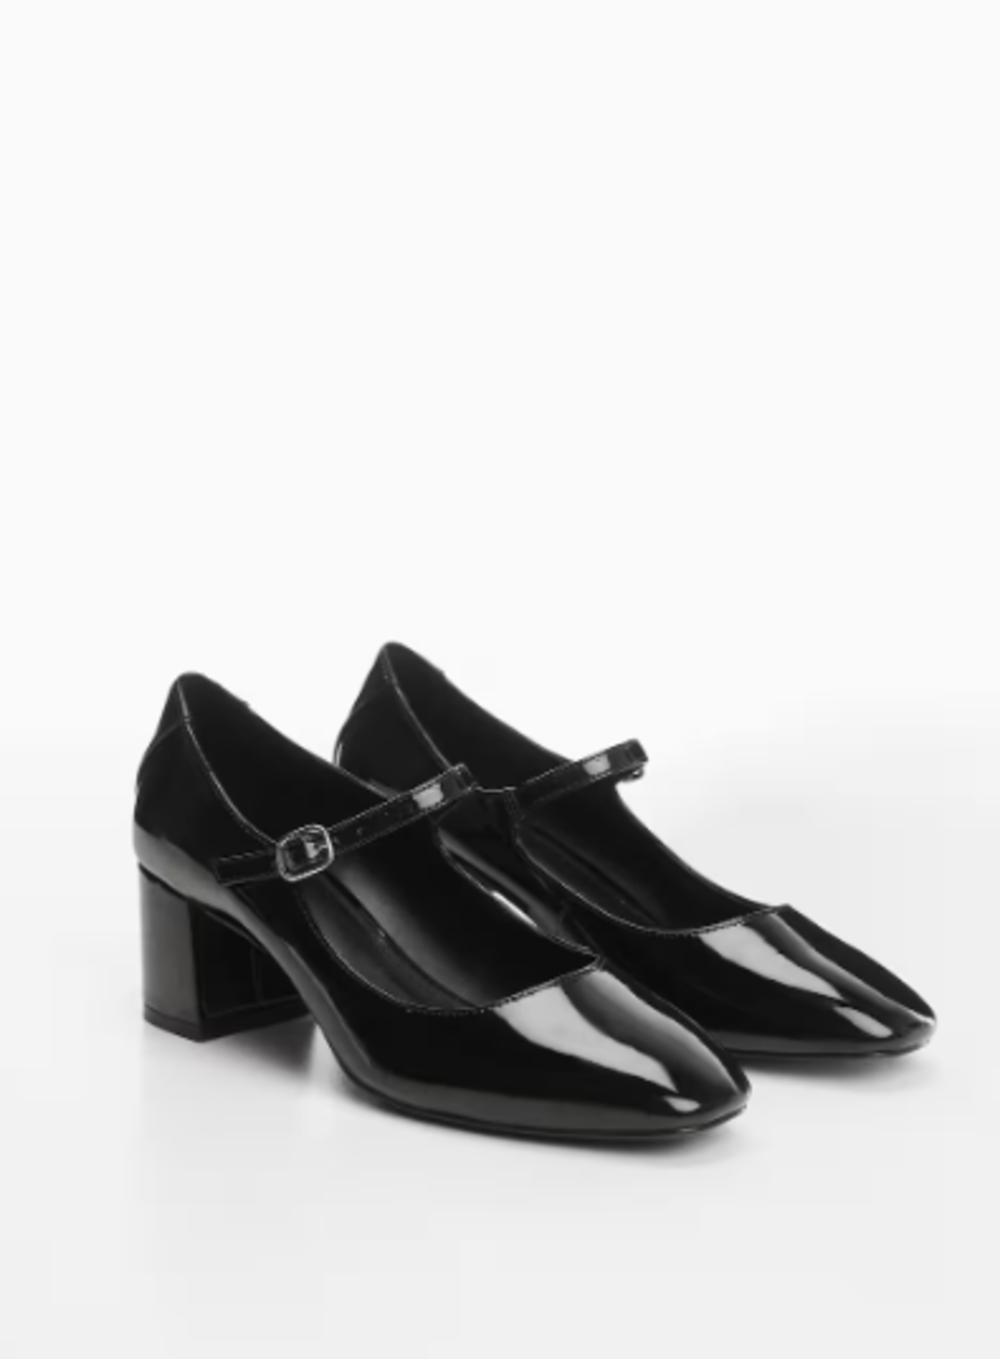 m5 Mary Jane cipele su najpopularnija obuća za proleće: Pronašli smo top 8 modela